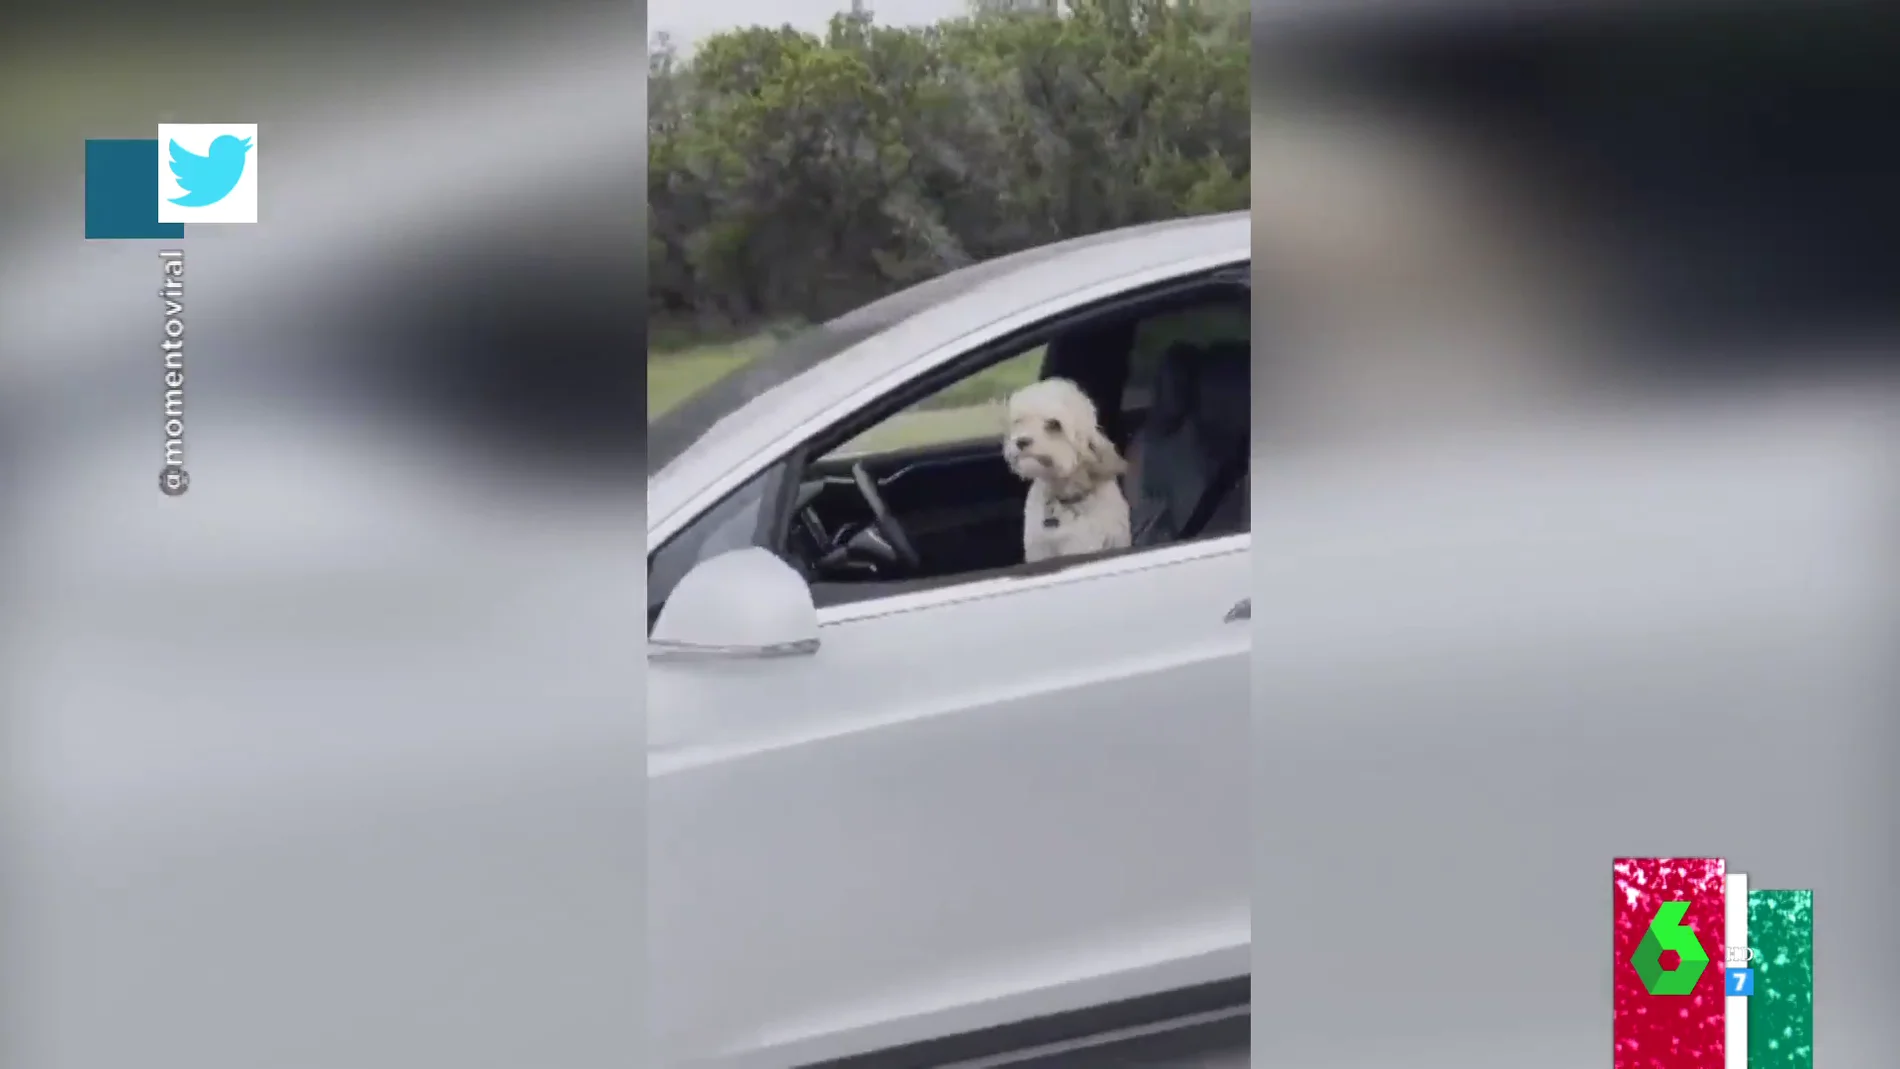  Un perro 'al volante': la desconcertante imagen de un coche autónomo en plena carretera